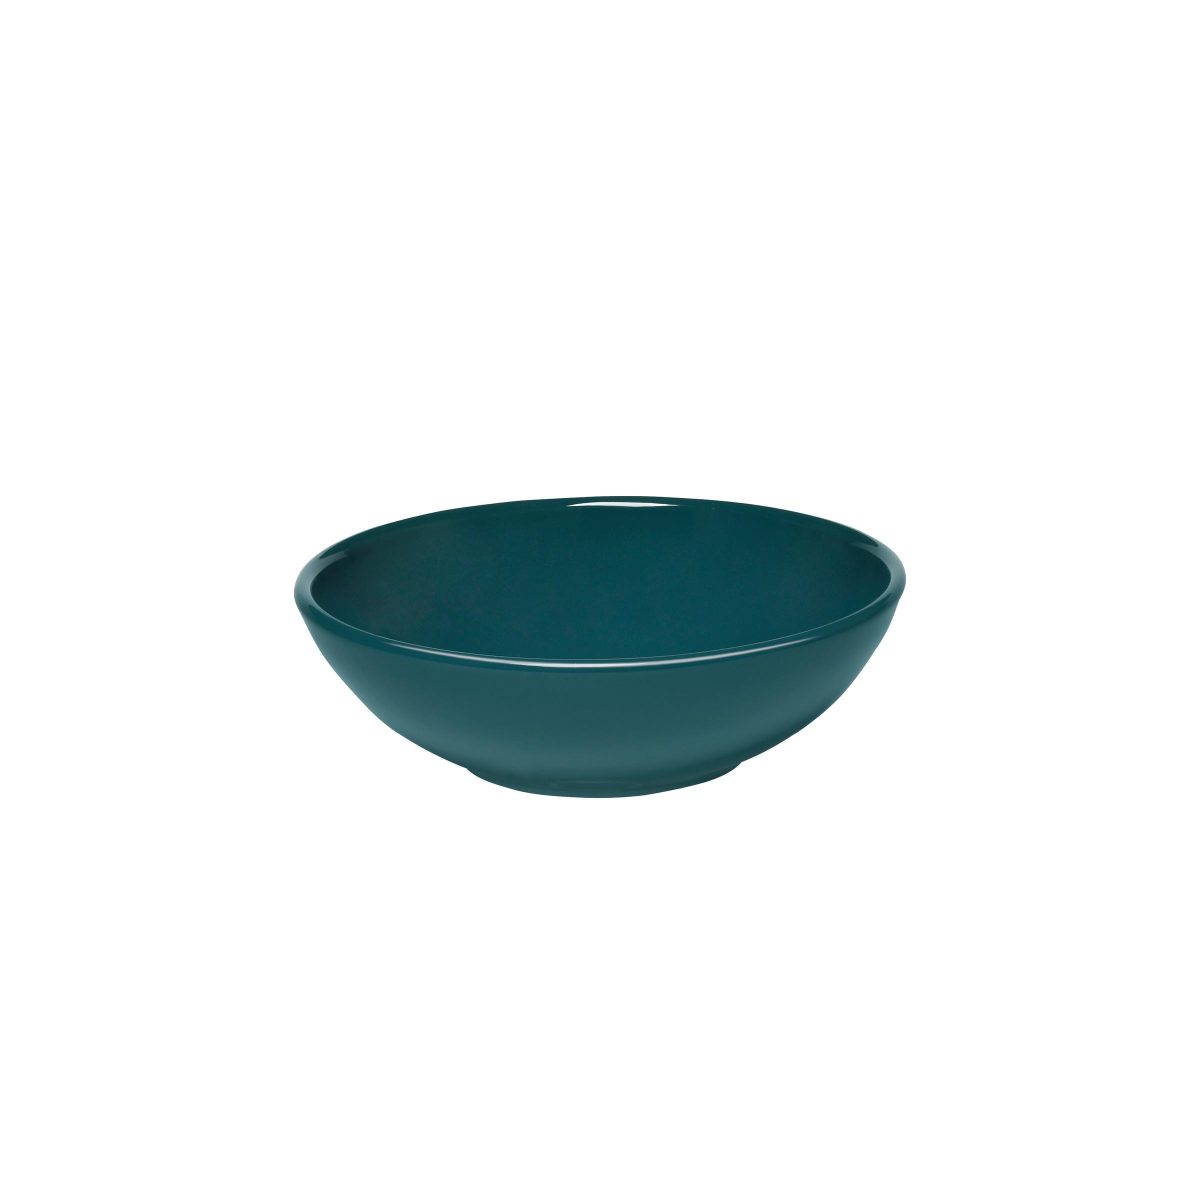 Купа за салата EMILE HENRY INDIVIDUAL SALAD BOWL - Ø 15,5 см, цвят синьо-зелен